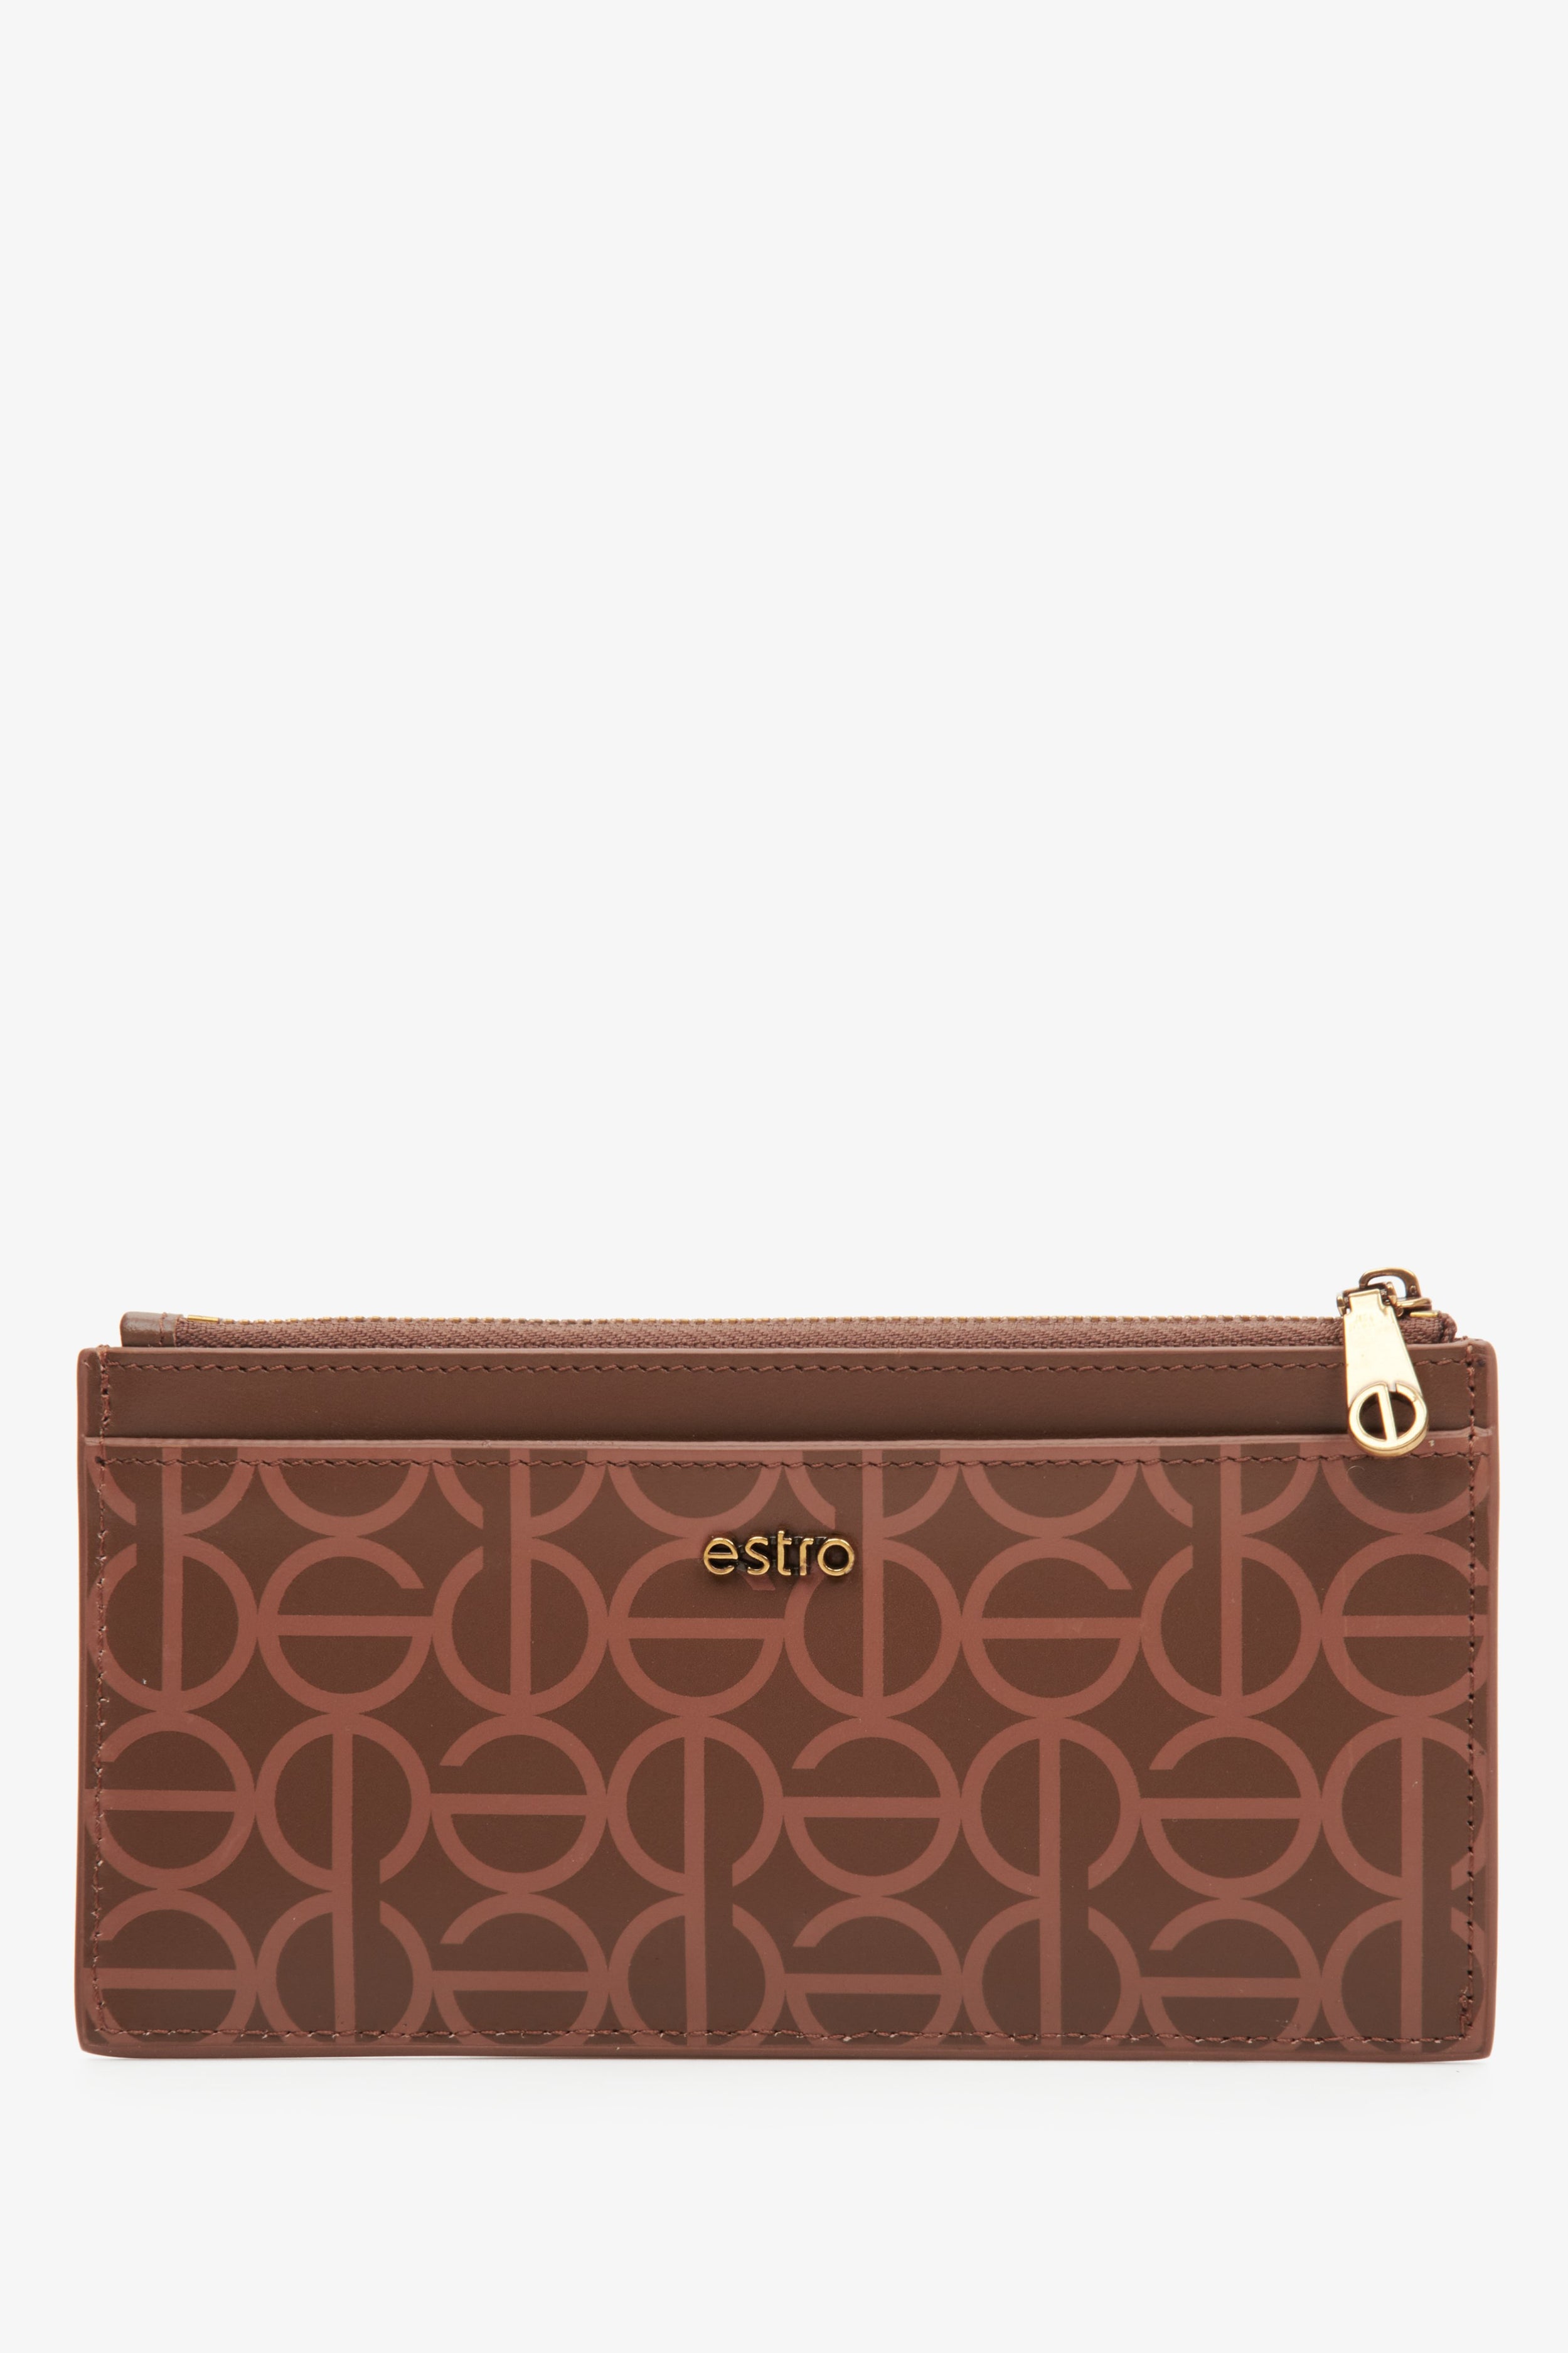 Estro: Duży portfel damski ze skóry naturalnej w kolorze brązowym